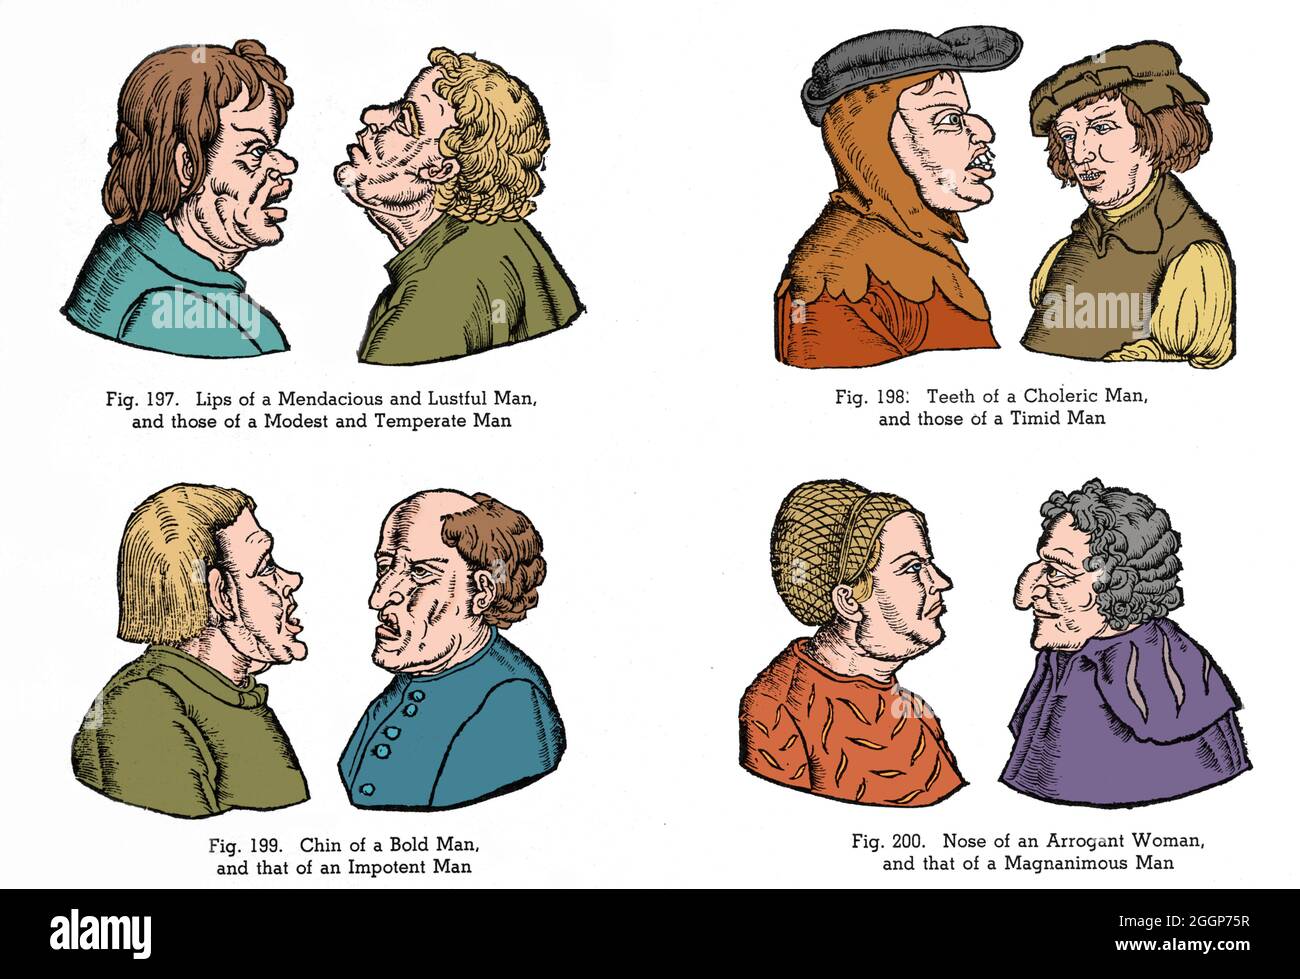 Ilustraciones de estereotipos medievales de personalidades basadas en rasgos faciales. La pseudociencia de la fisonomía es la evaluación del carácter o personalidad de una persona a partir de su apariencia exterior, especialmente la cara. Color mejorado. Foto de stock